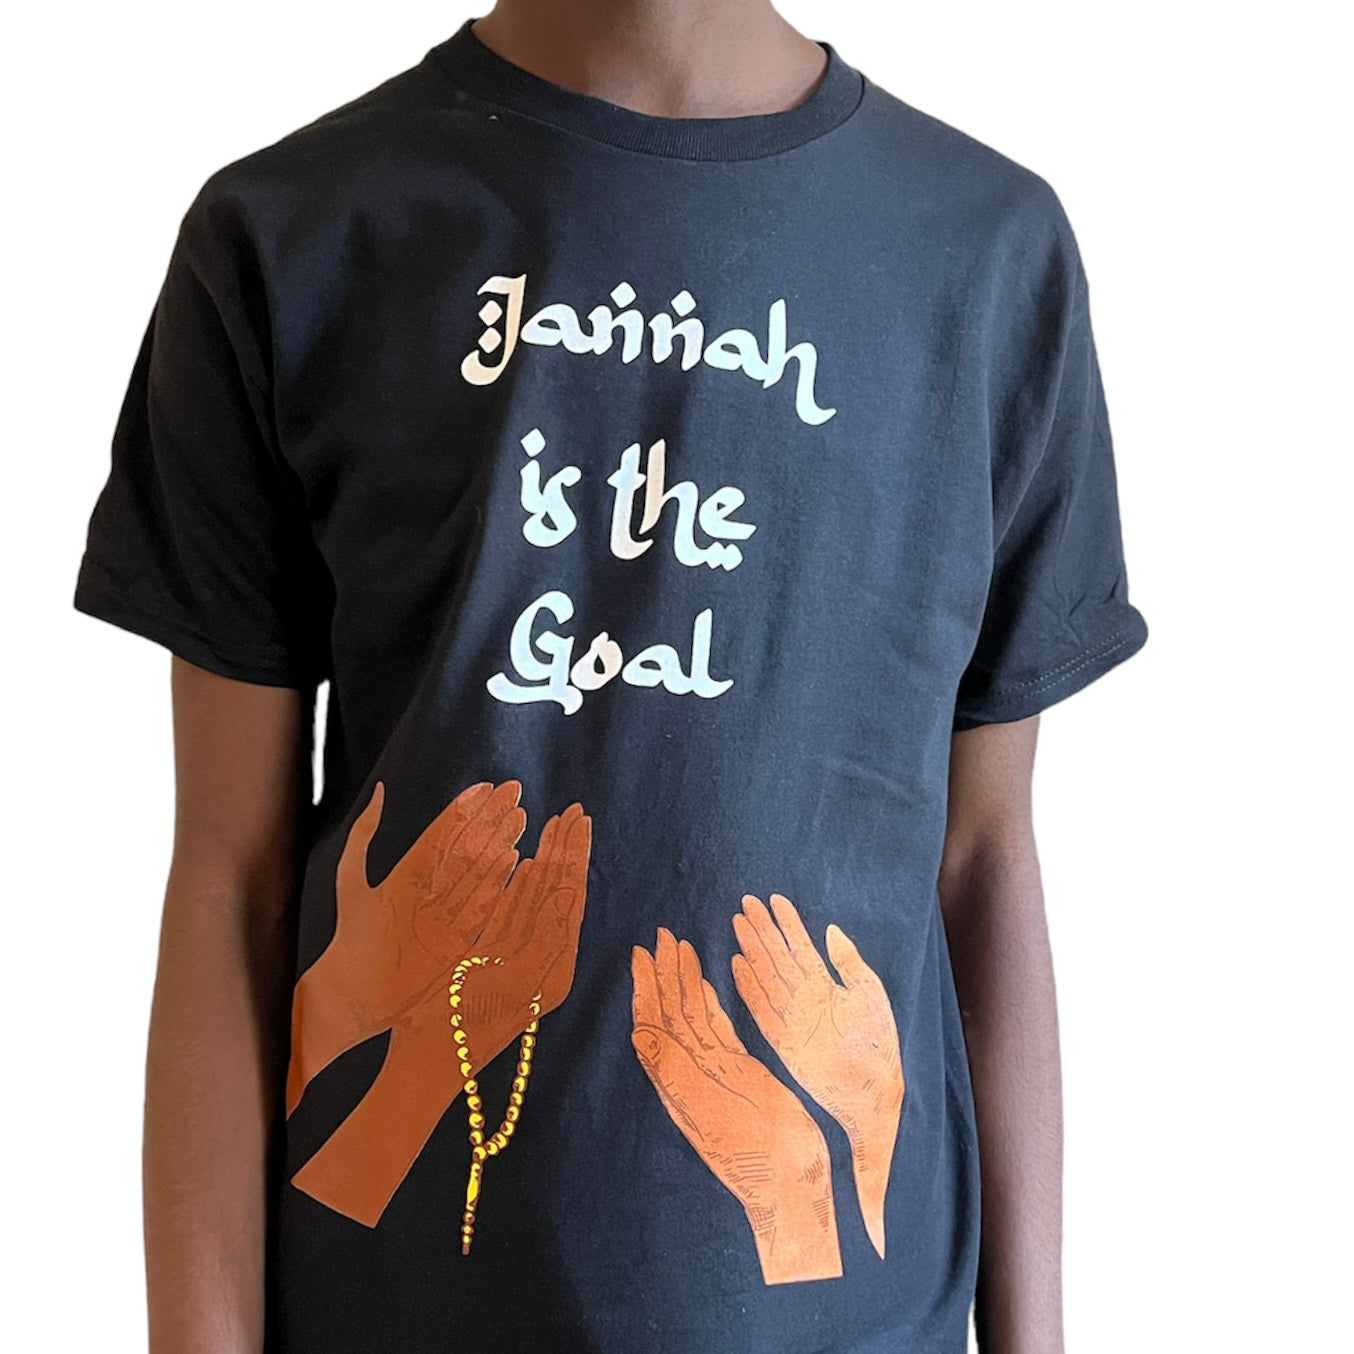 Jannah is the Goal - Short Sleeve Tee